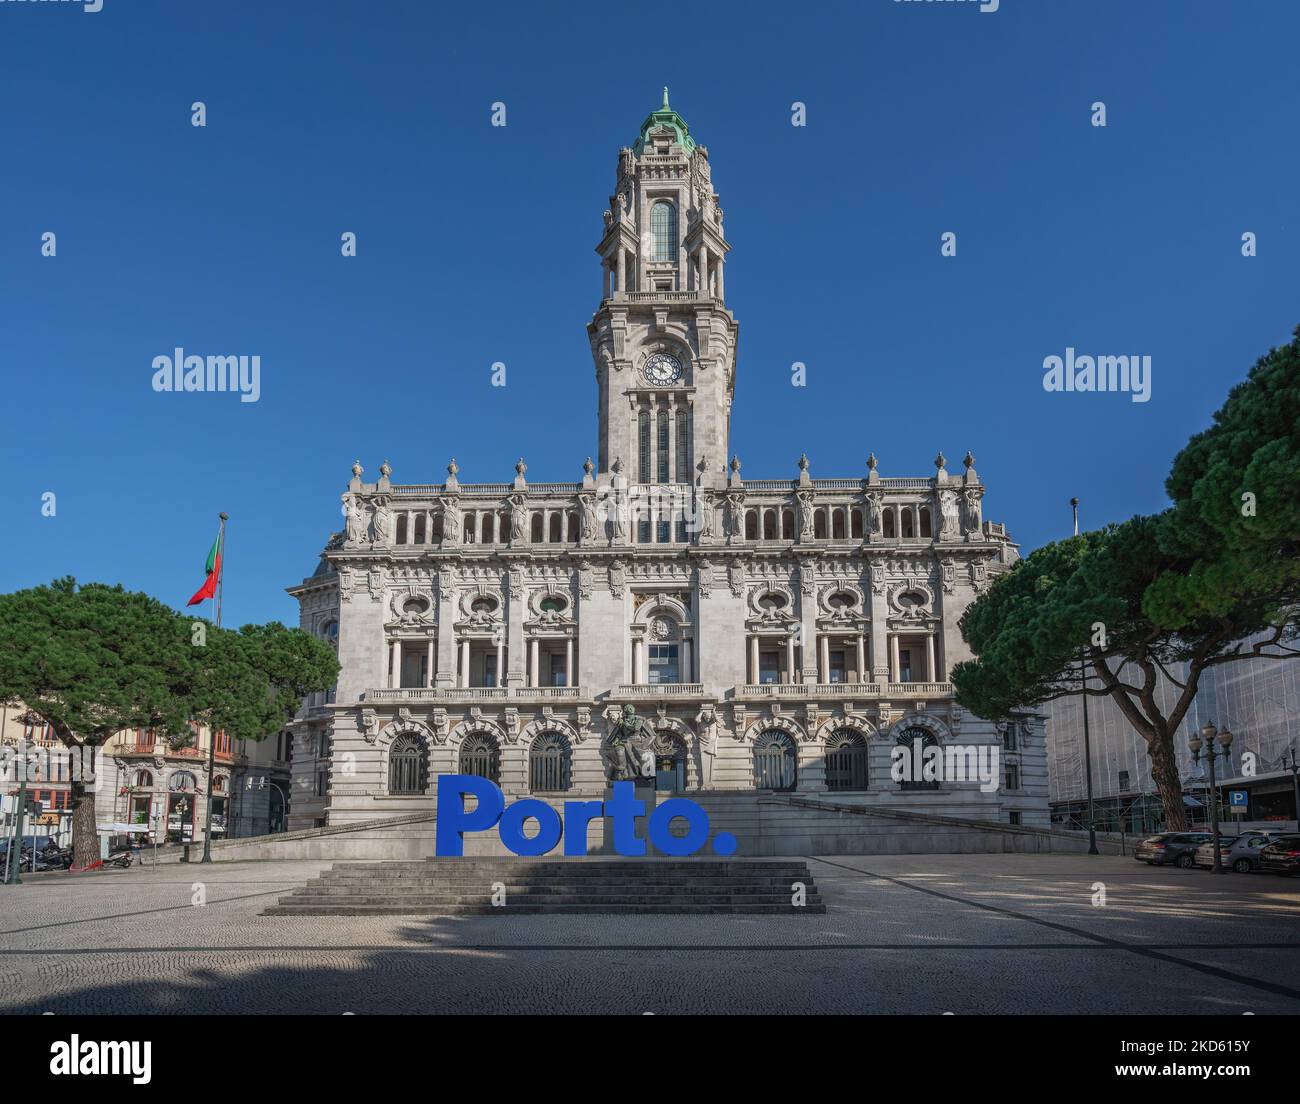 Porto City Hall (Pacos do Concelho) and City Sign - Porto, Portugal Stock Photo